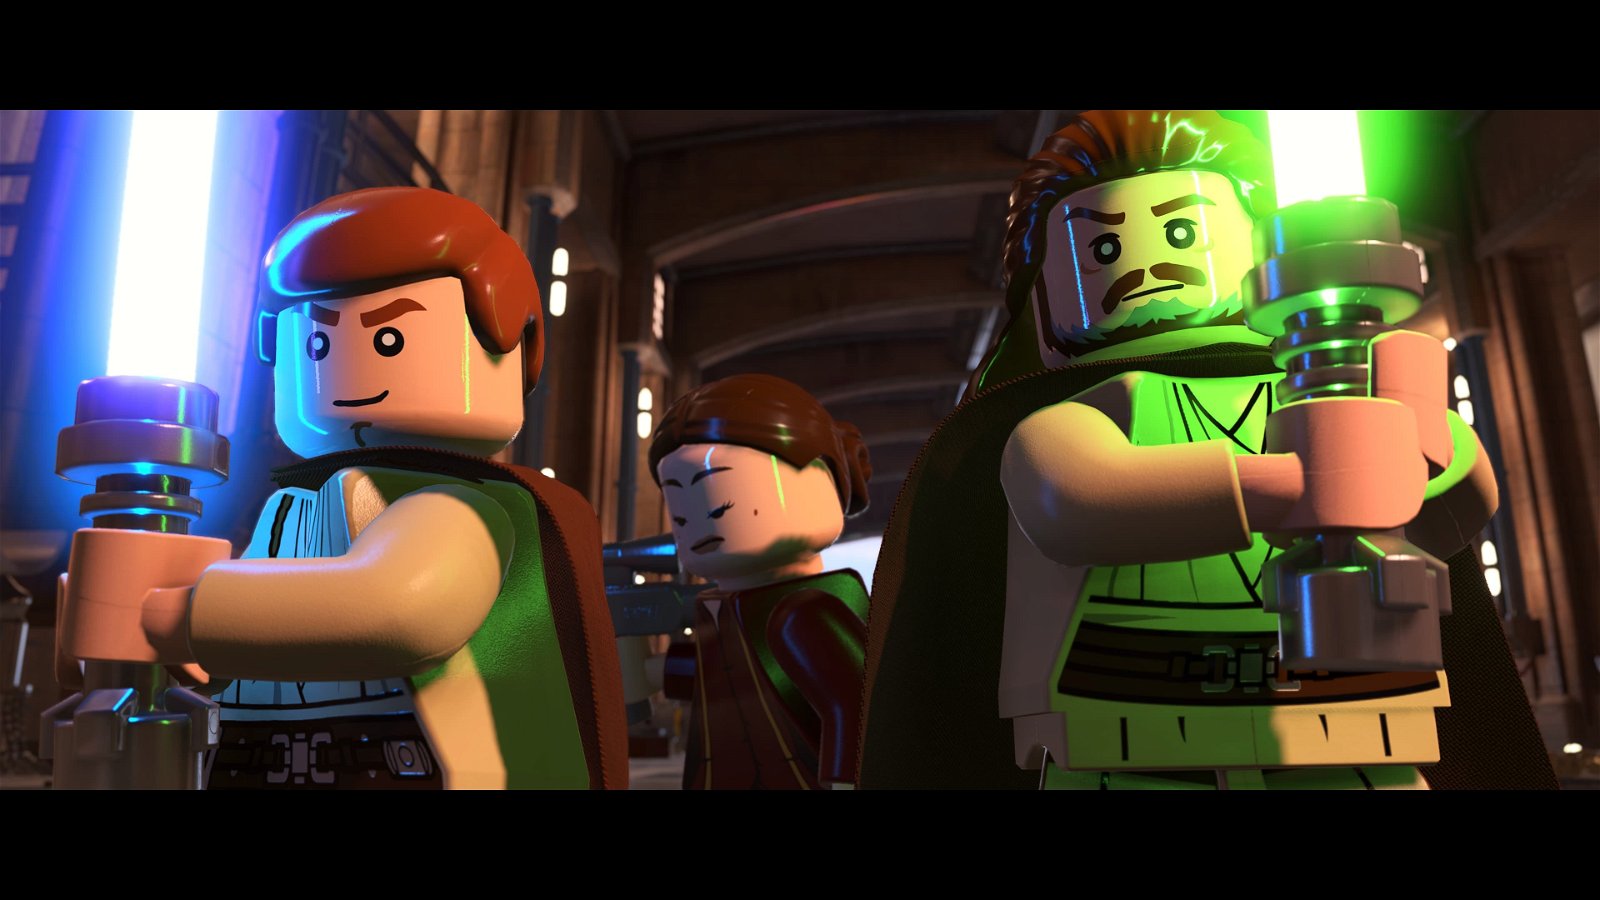 Análisis de LEGO Star Wars: La Saga Skywalker